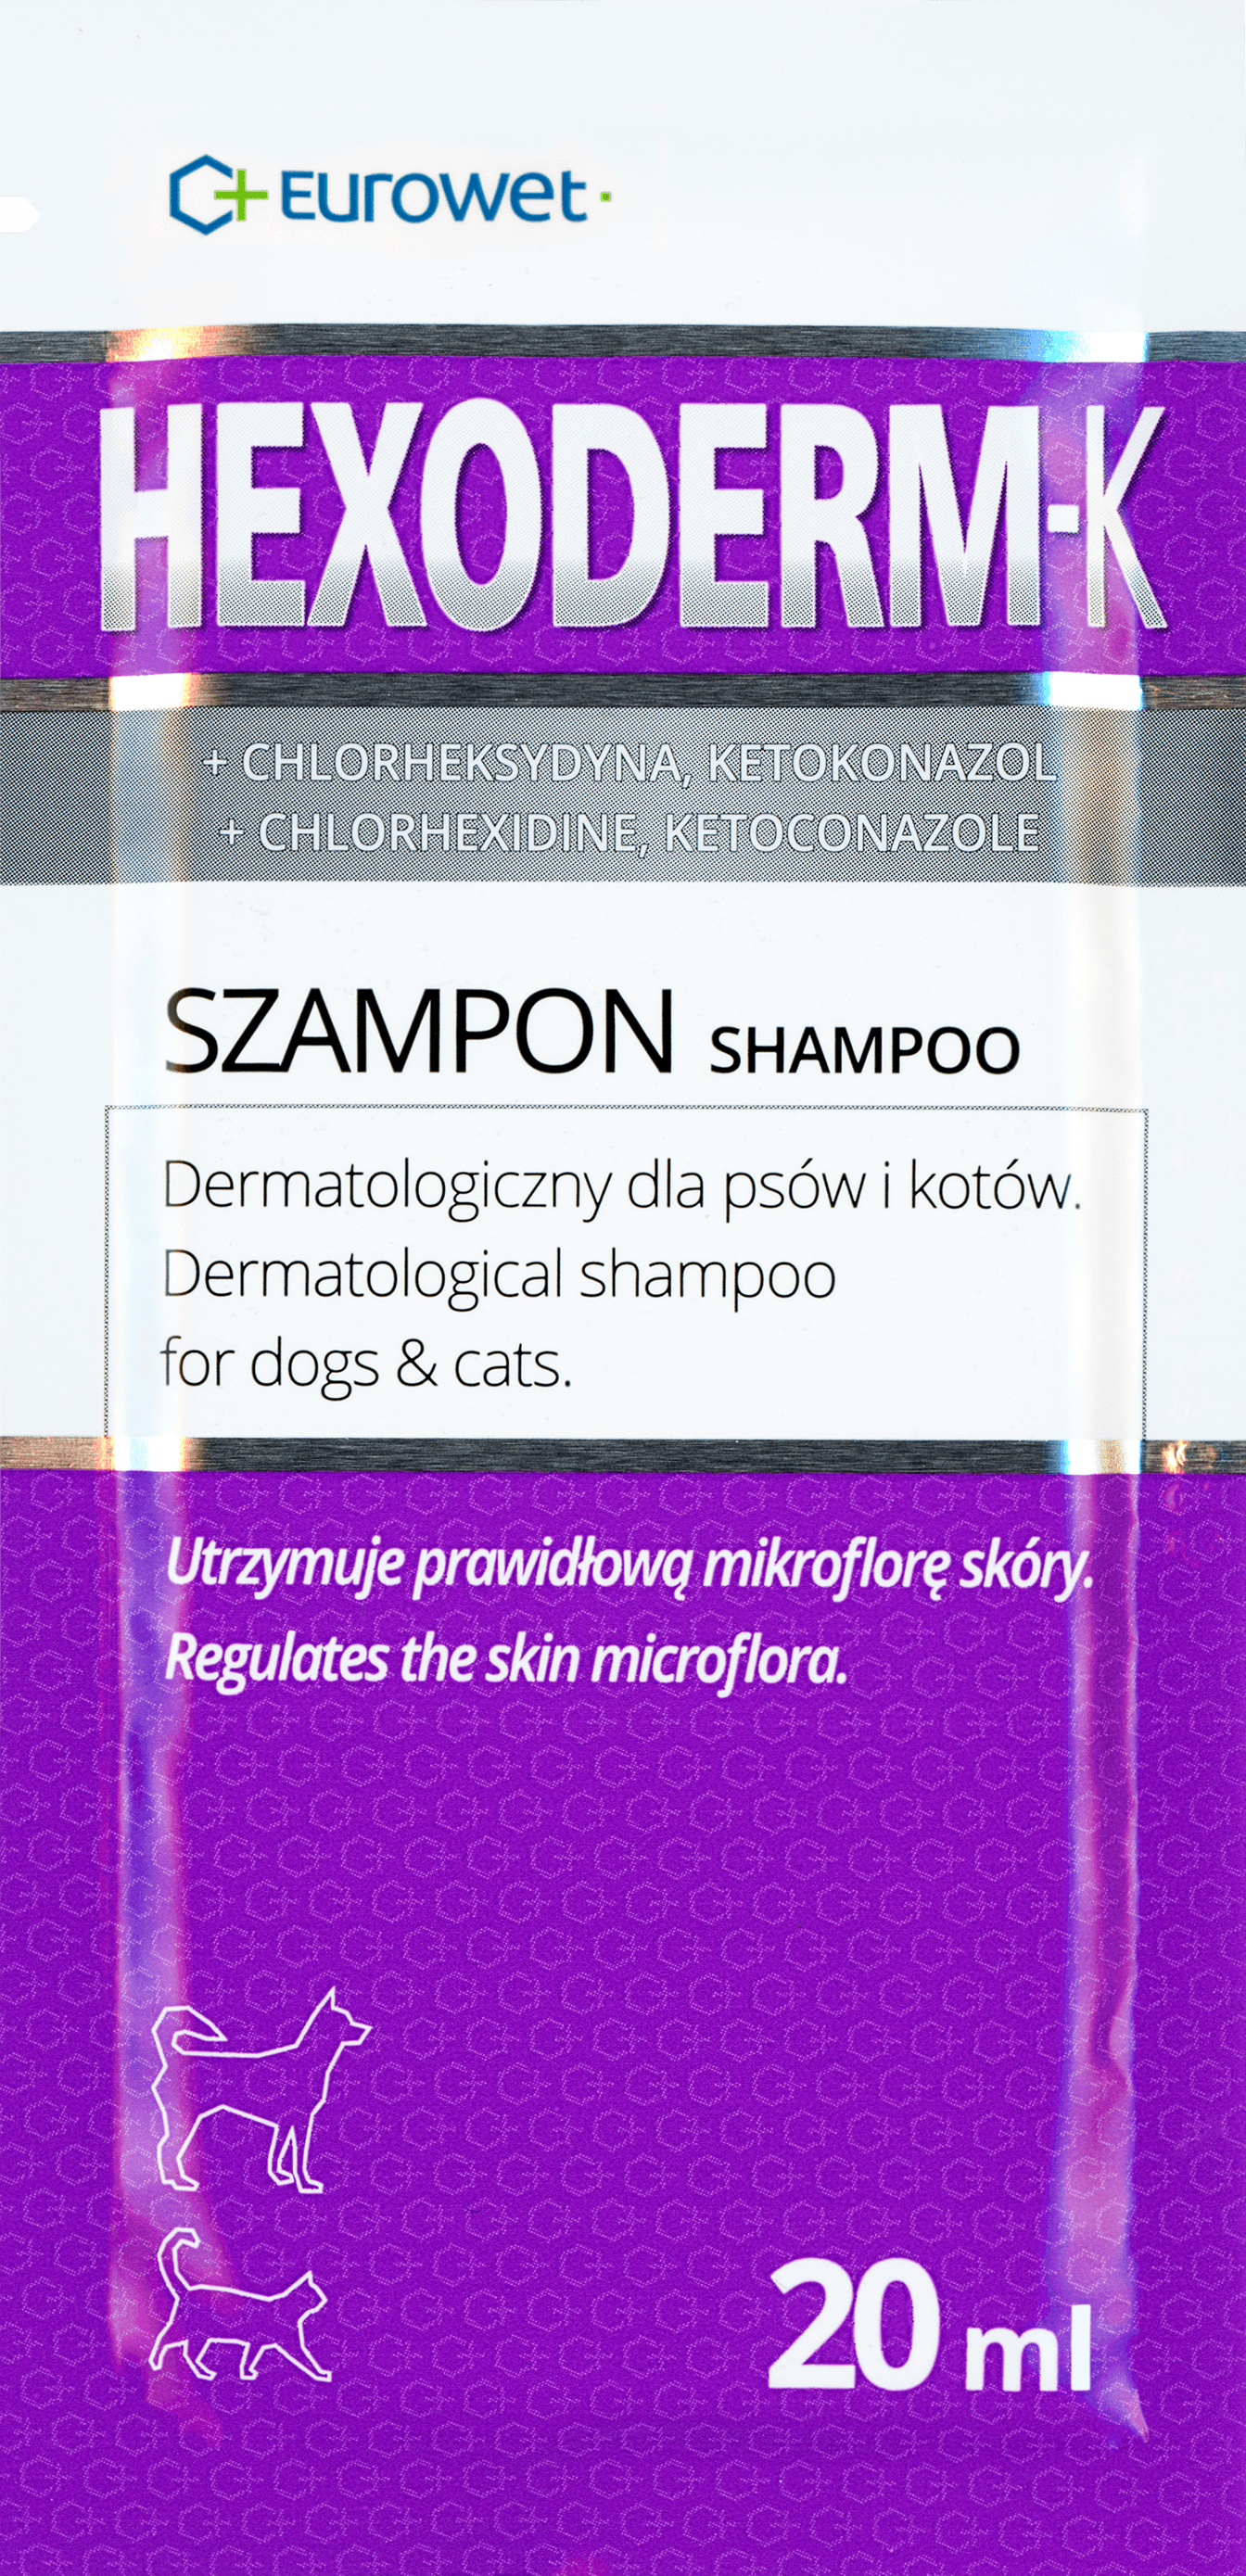 szampon dla psów hexoderm i peroxyvet